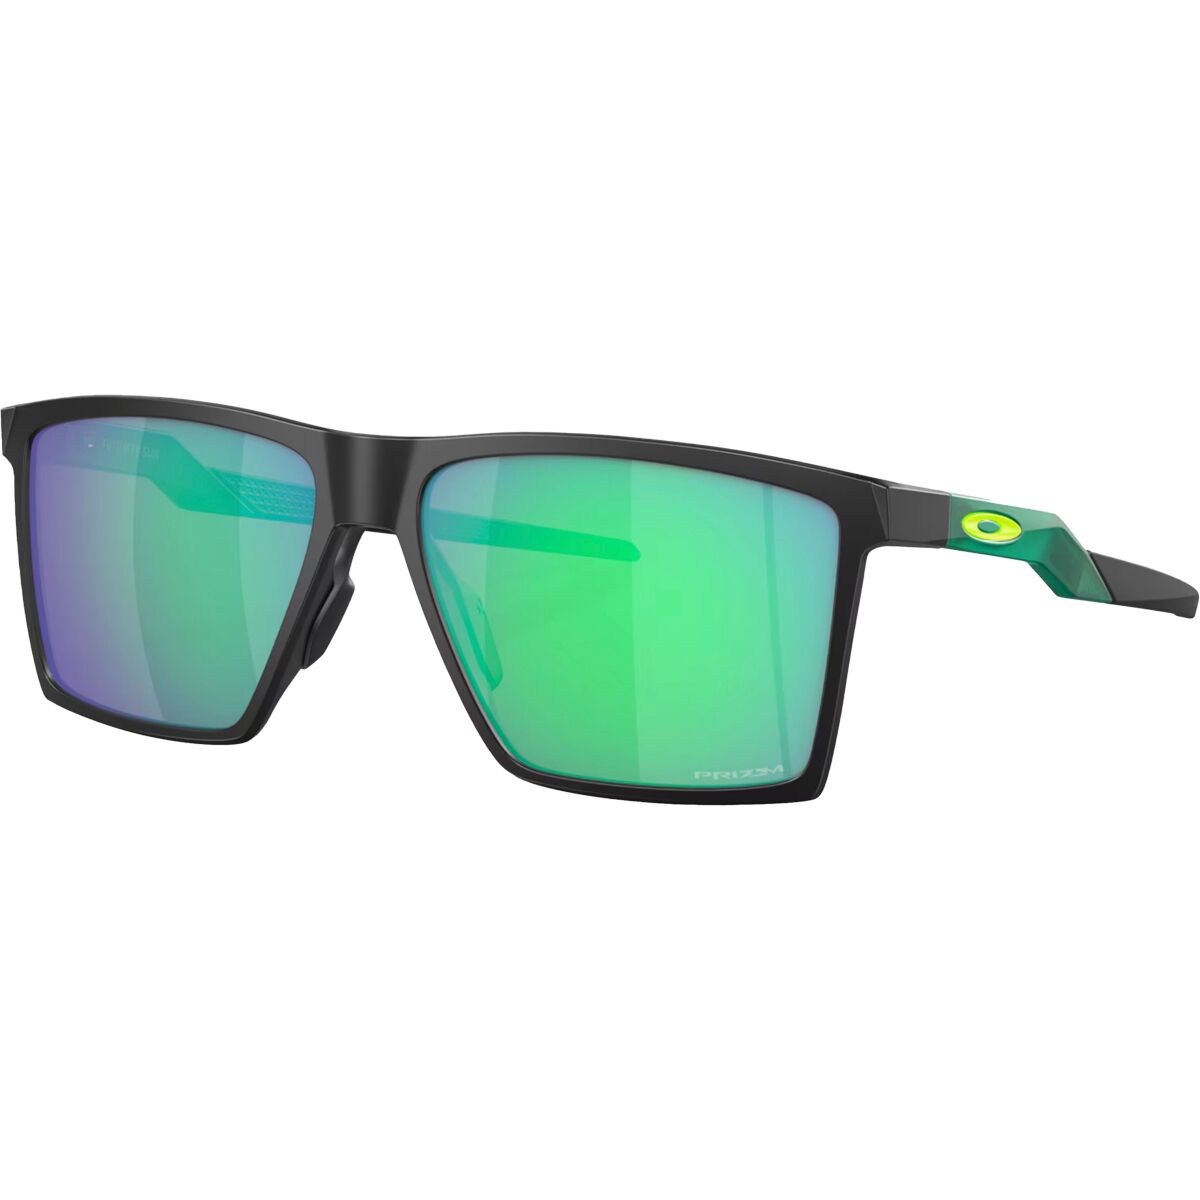 Futurity Prizm Sunglasses Oakley